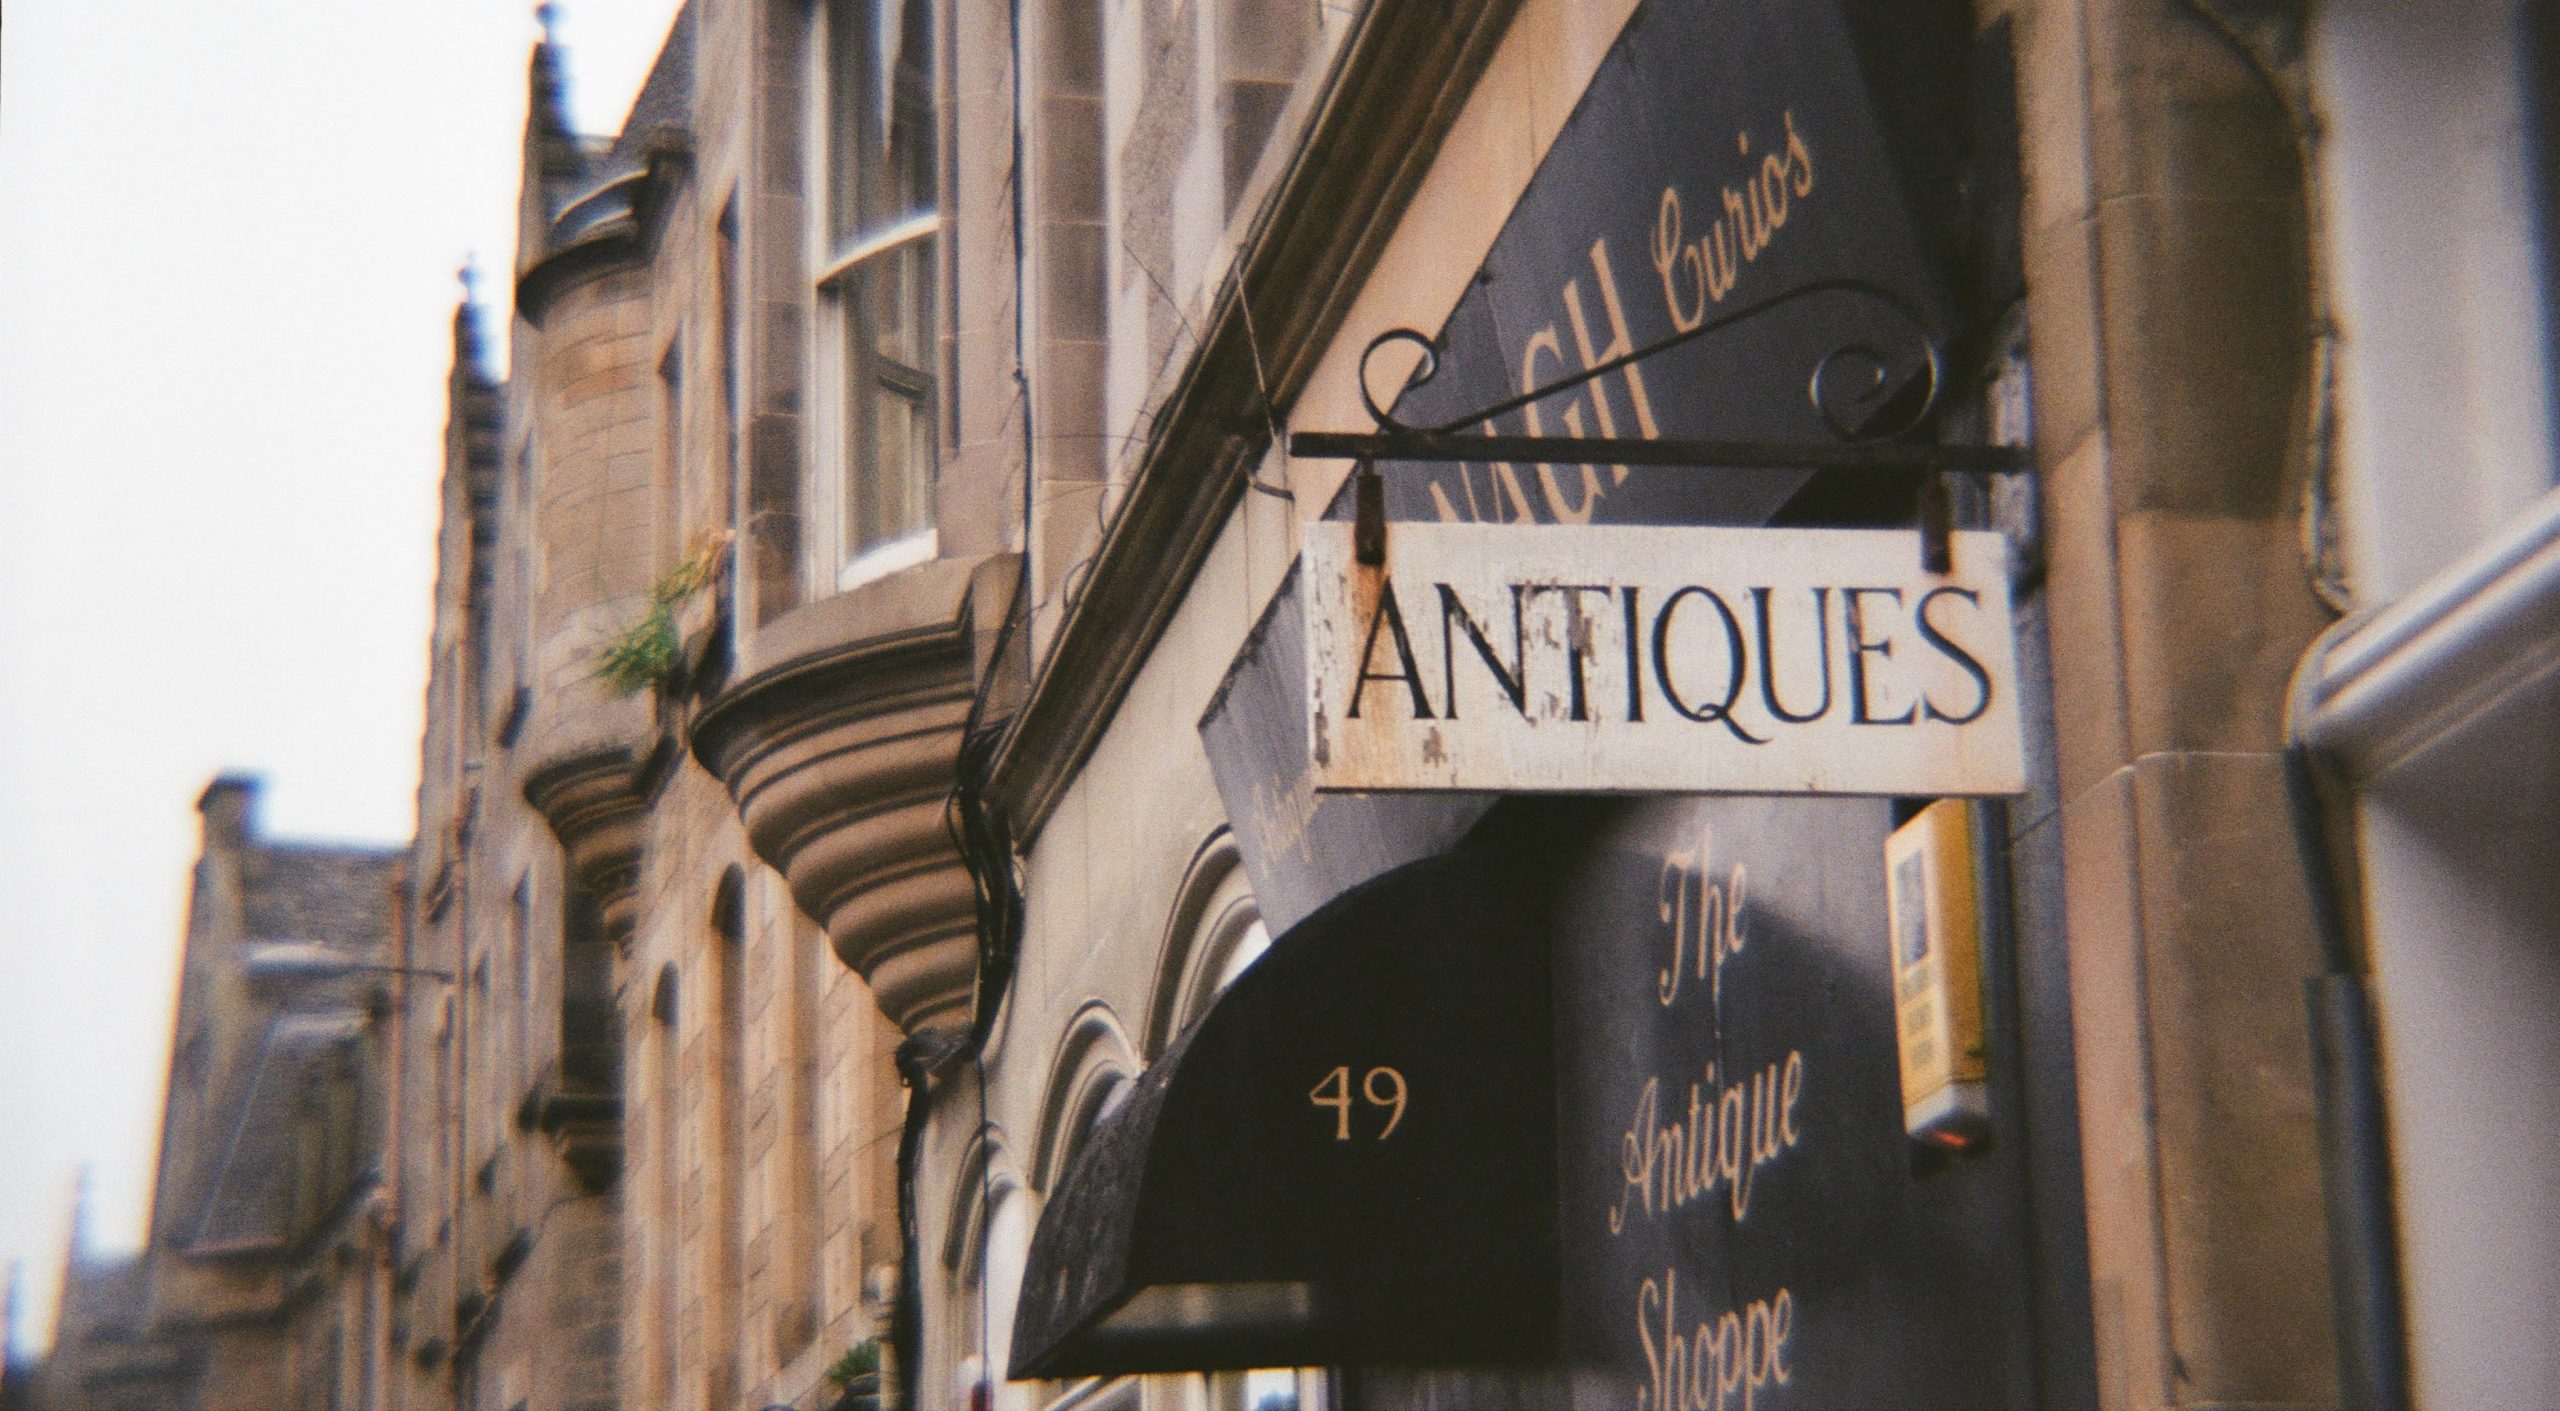 "Antiques" sign outside shop